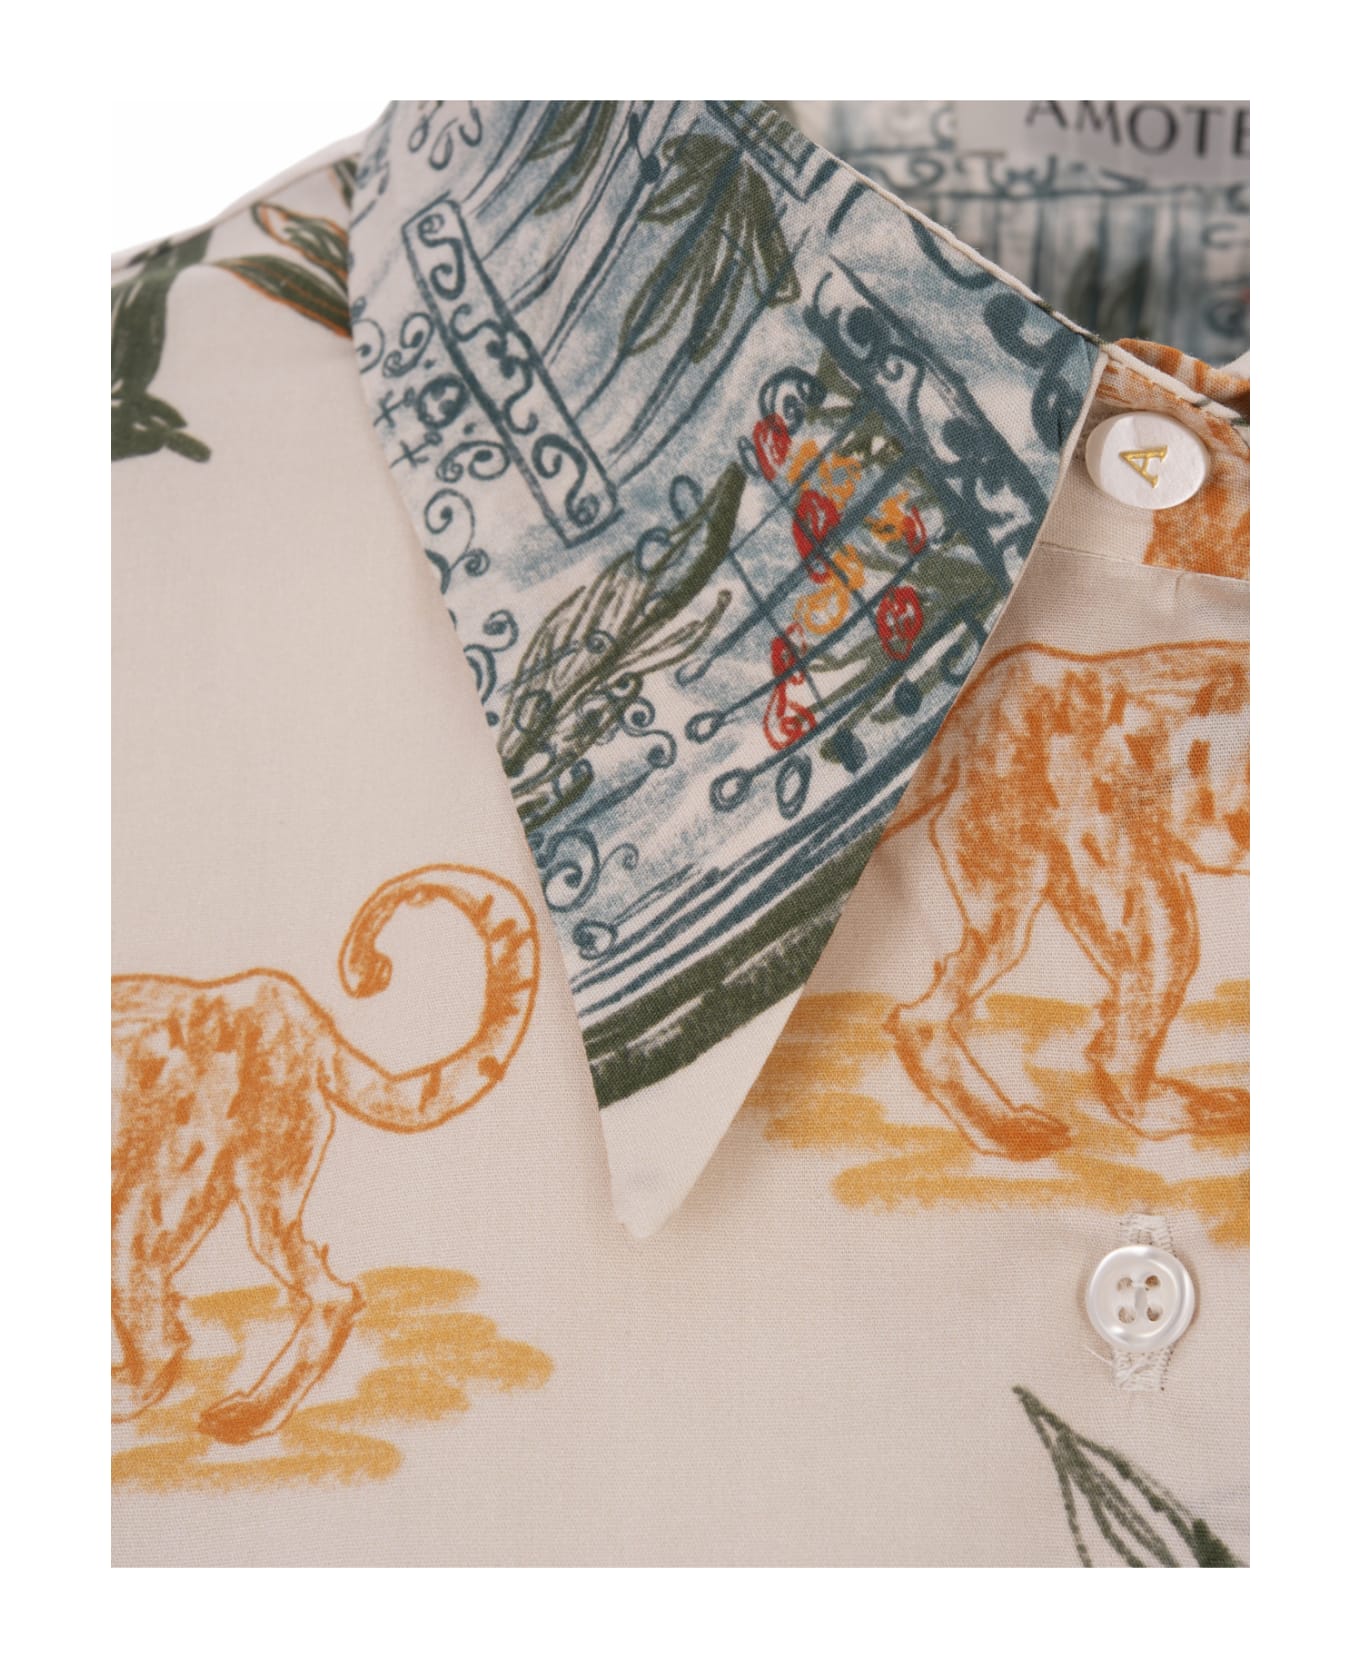 Amotea Kaia Shirt In White Cotton With Leopard Print - White